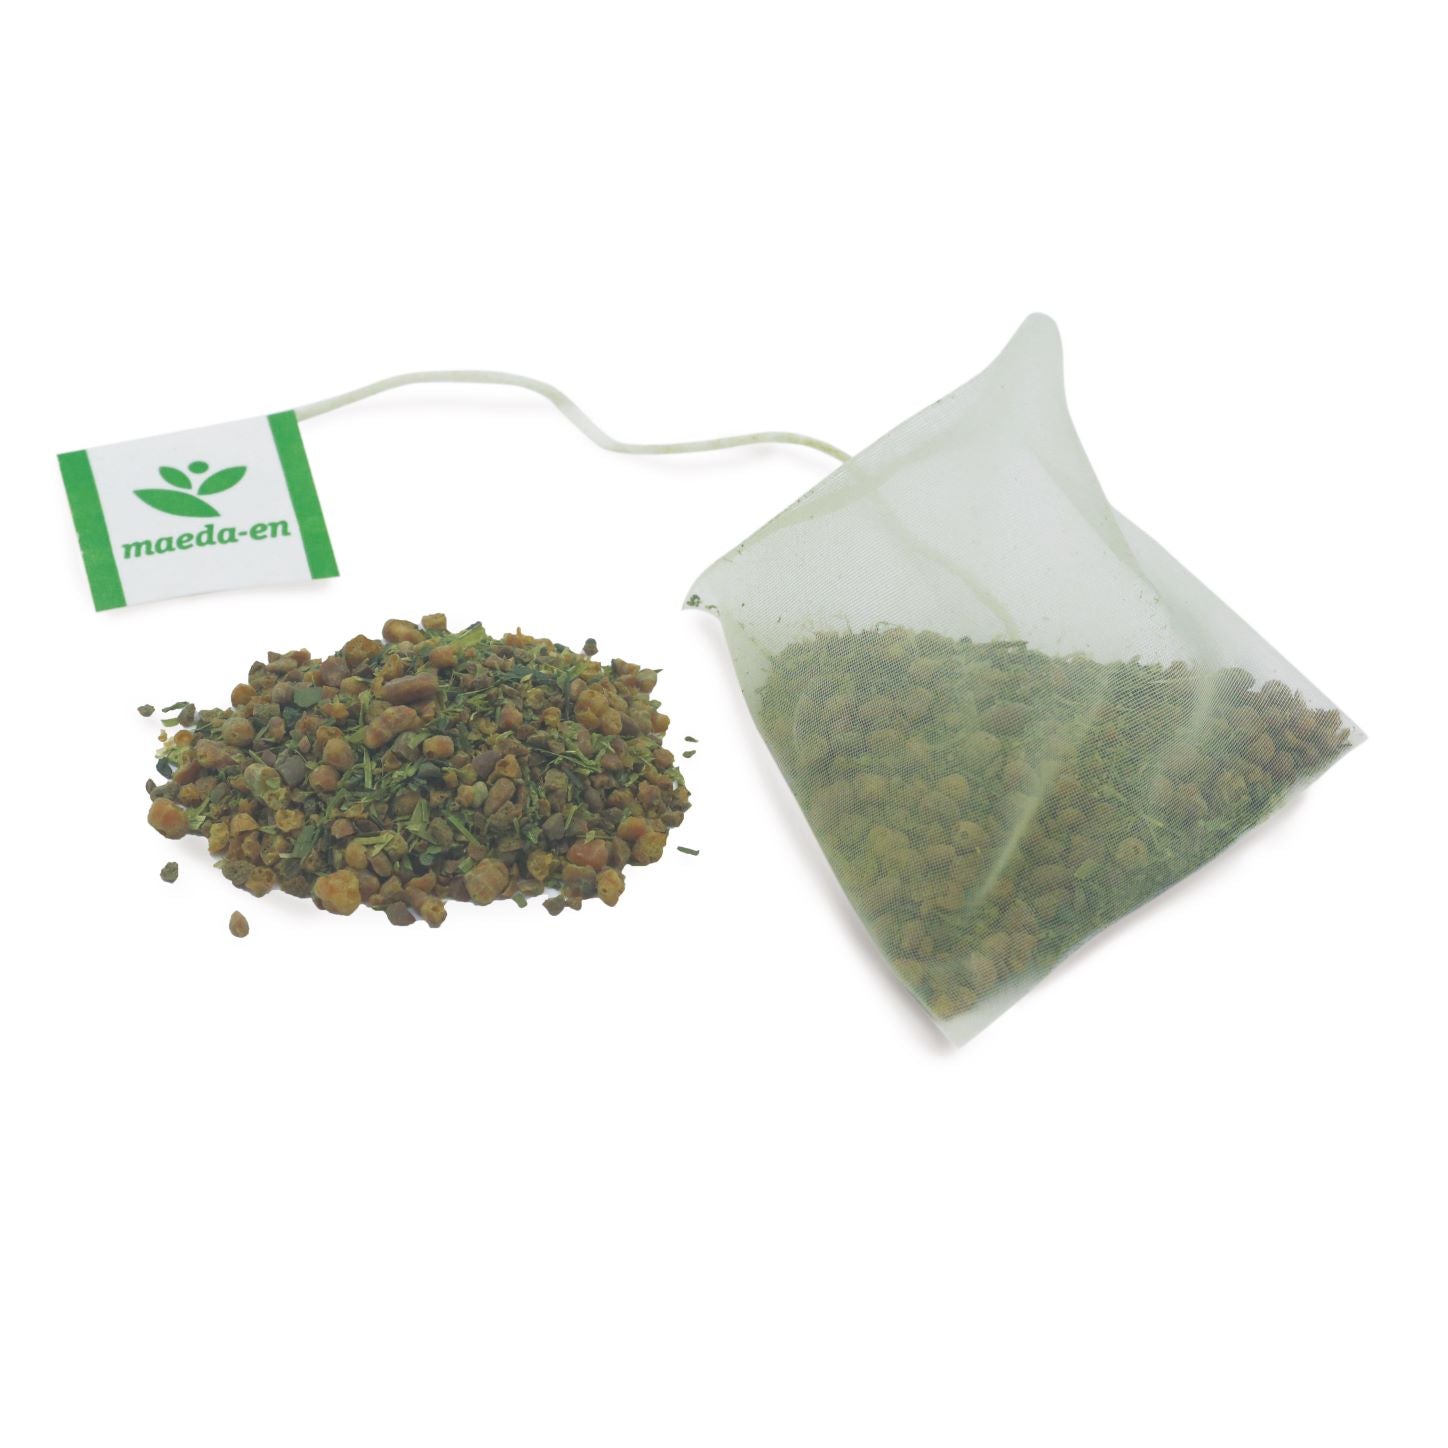 Premium Green Tea Tea bag Set - Sencha and Genmai-cha